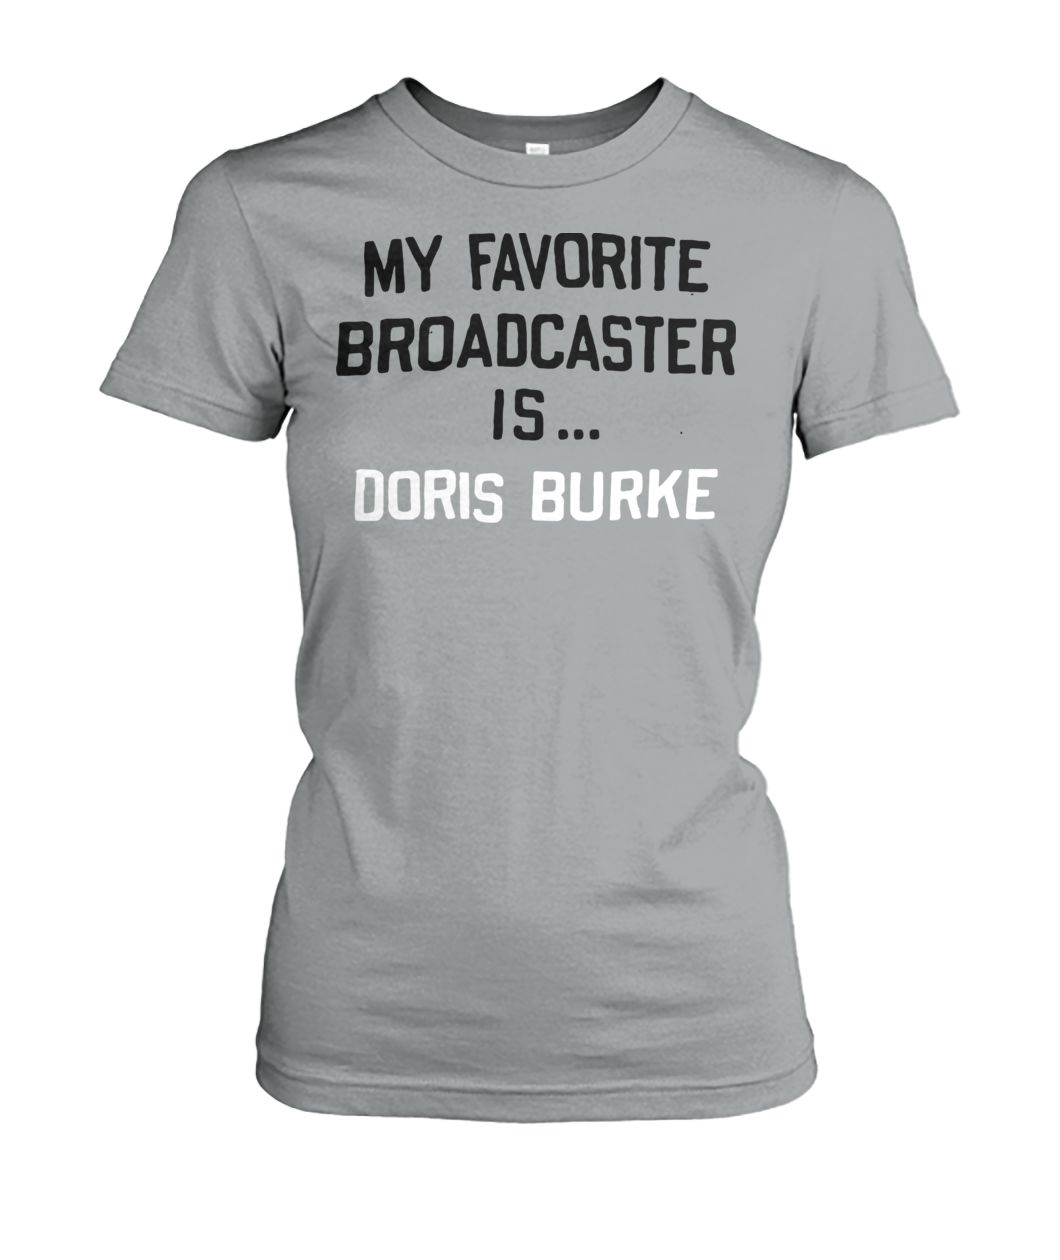 My favorite broadcaster is doris burke women's crew tee